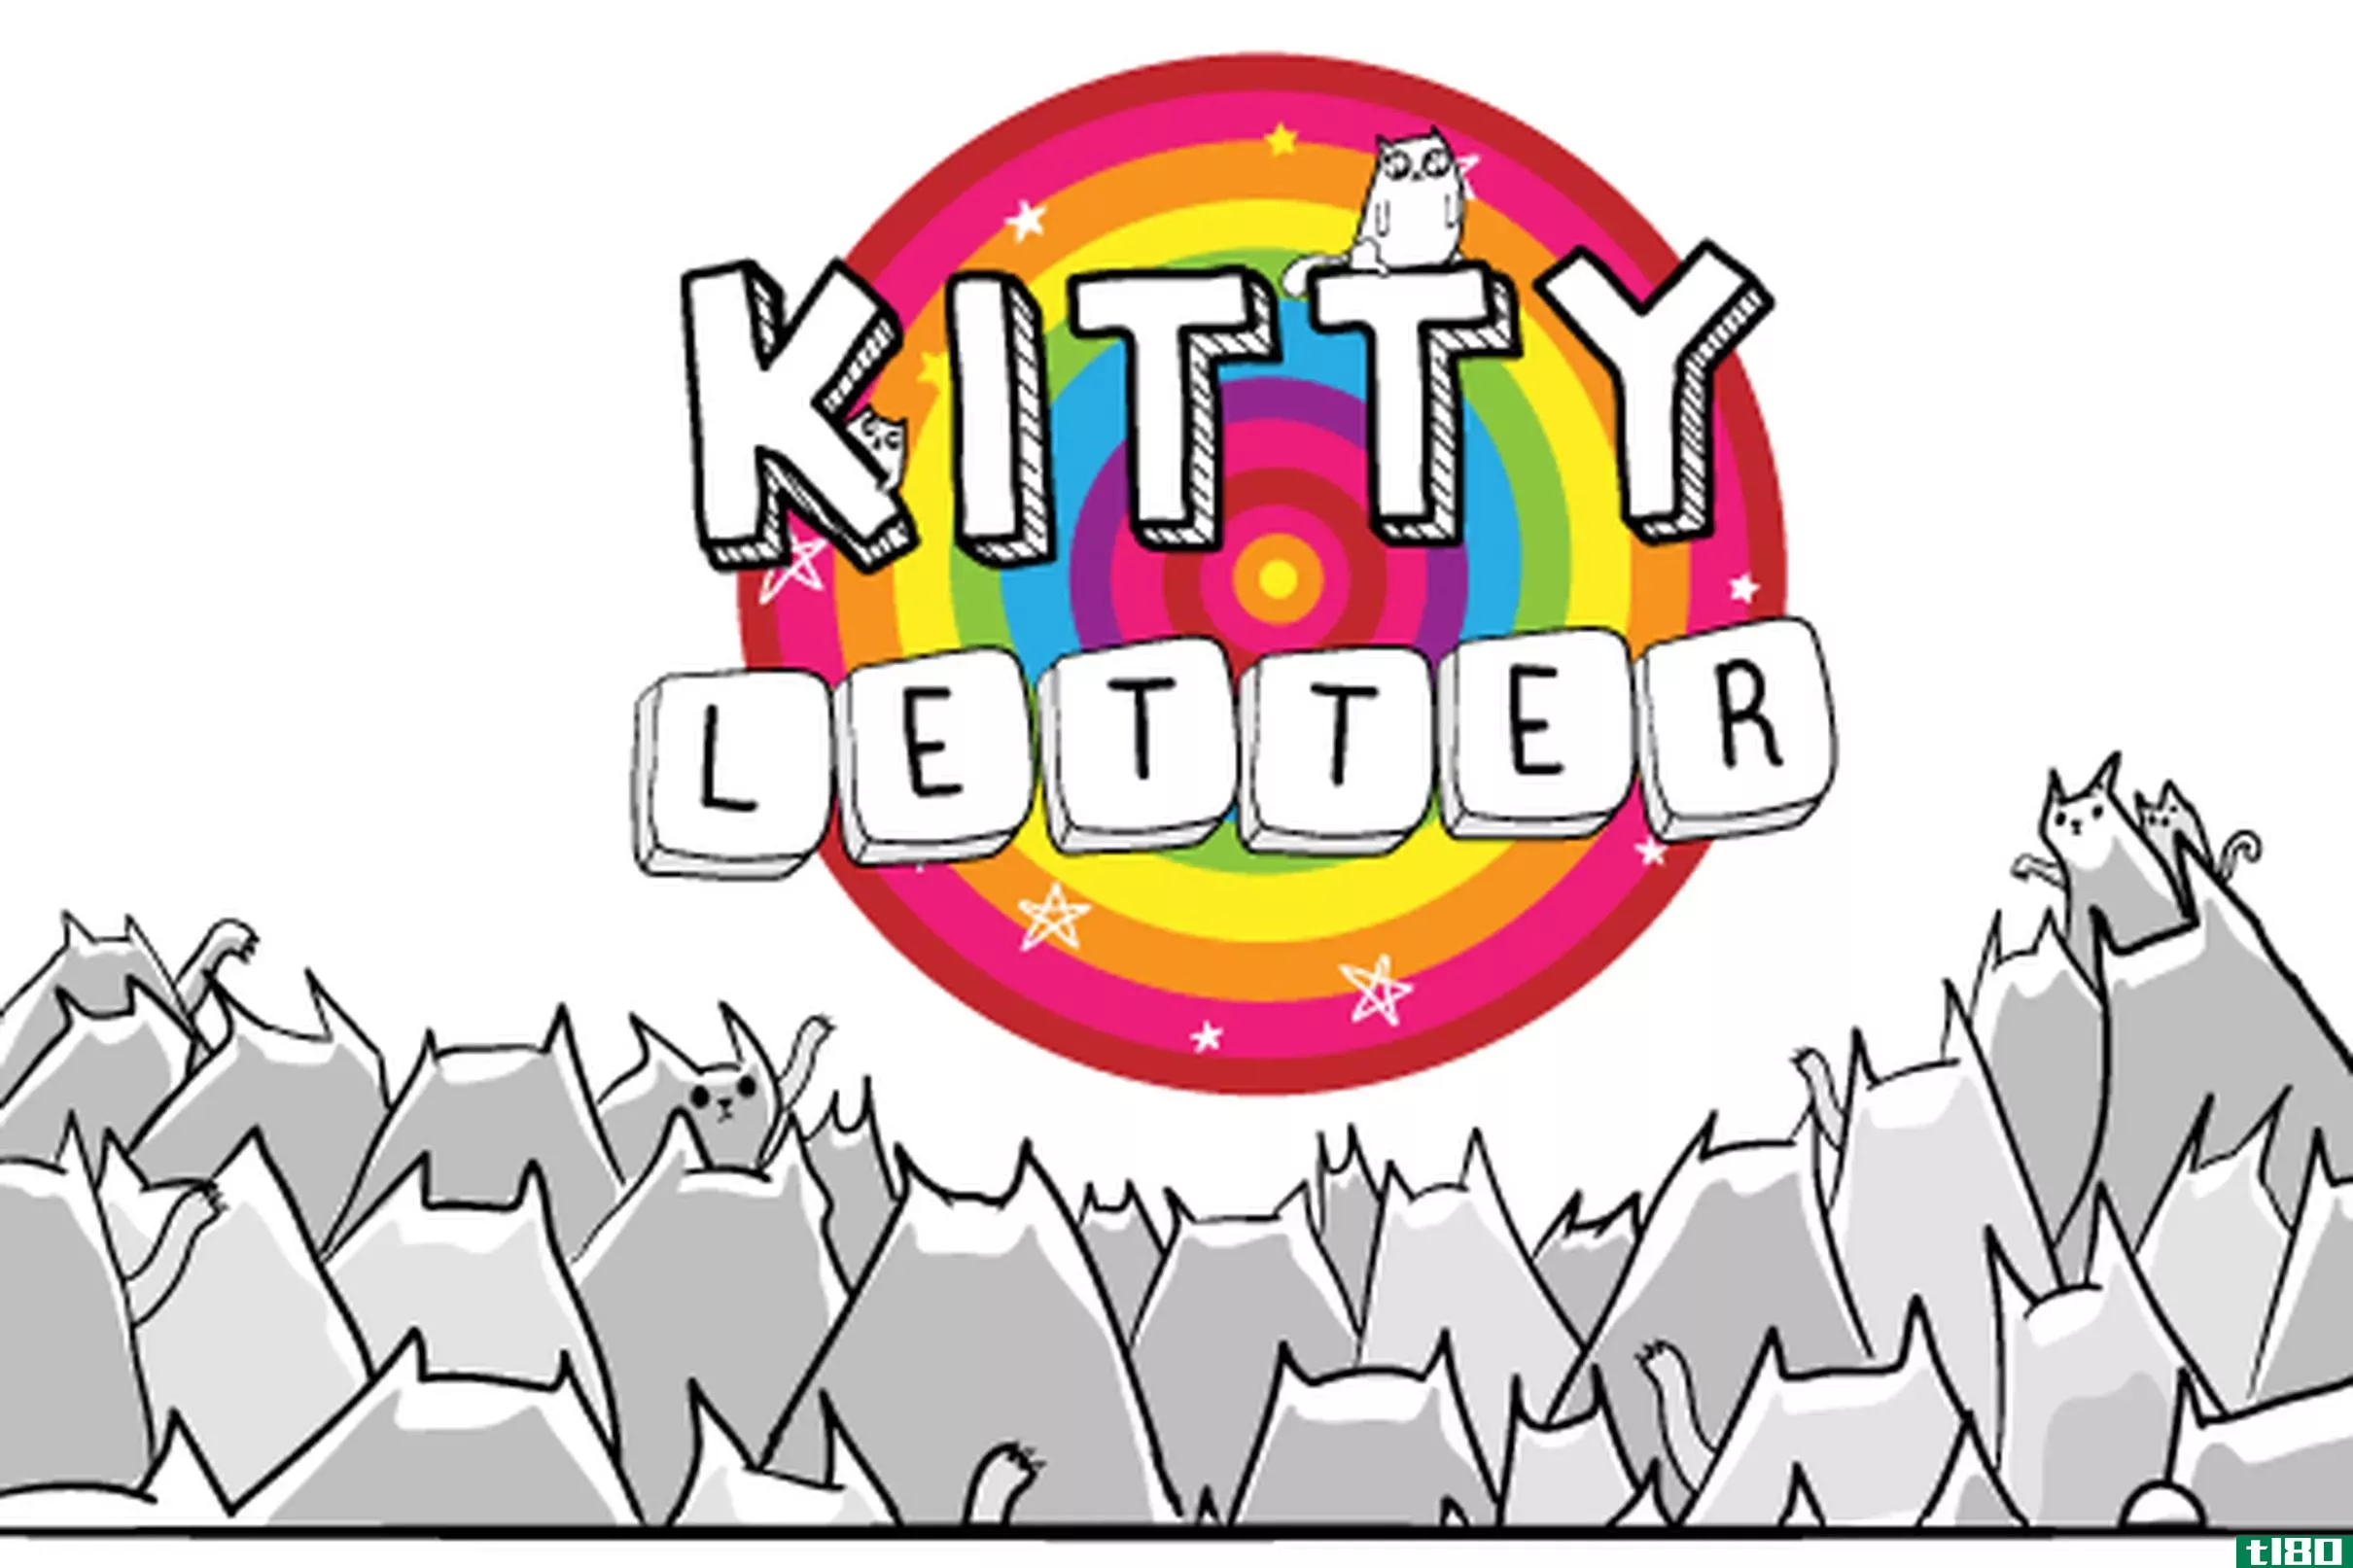 kitty letter是一款新的手机文字游戏，来自燕麦粥的创造者，很不错